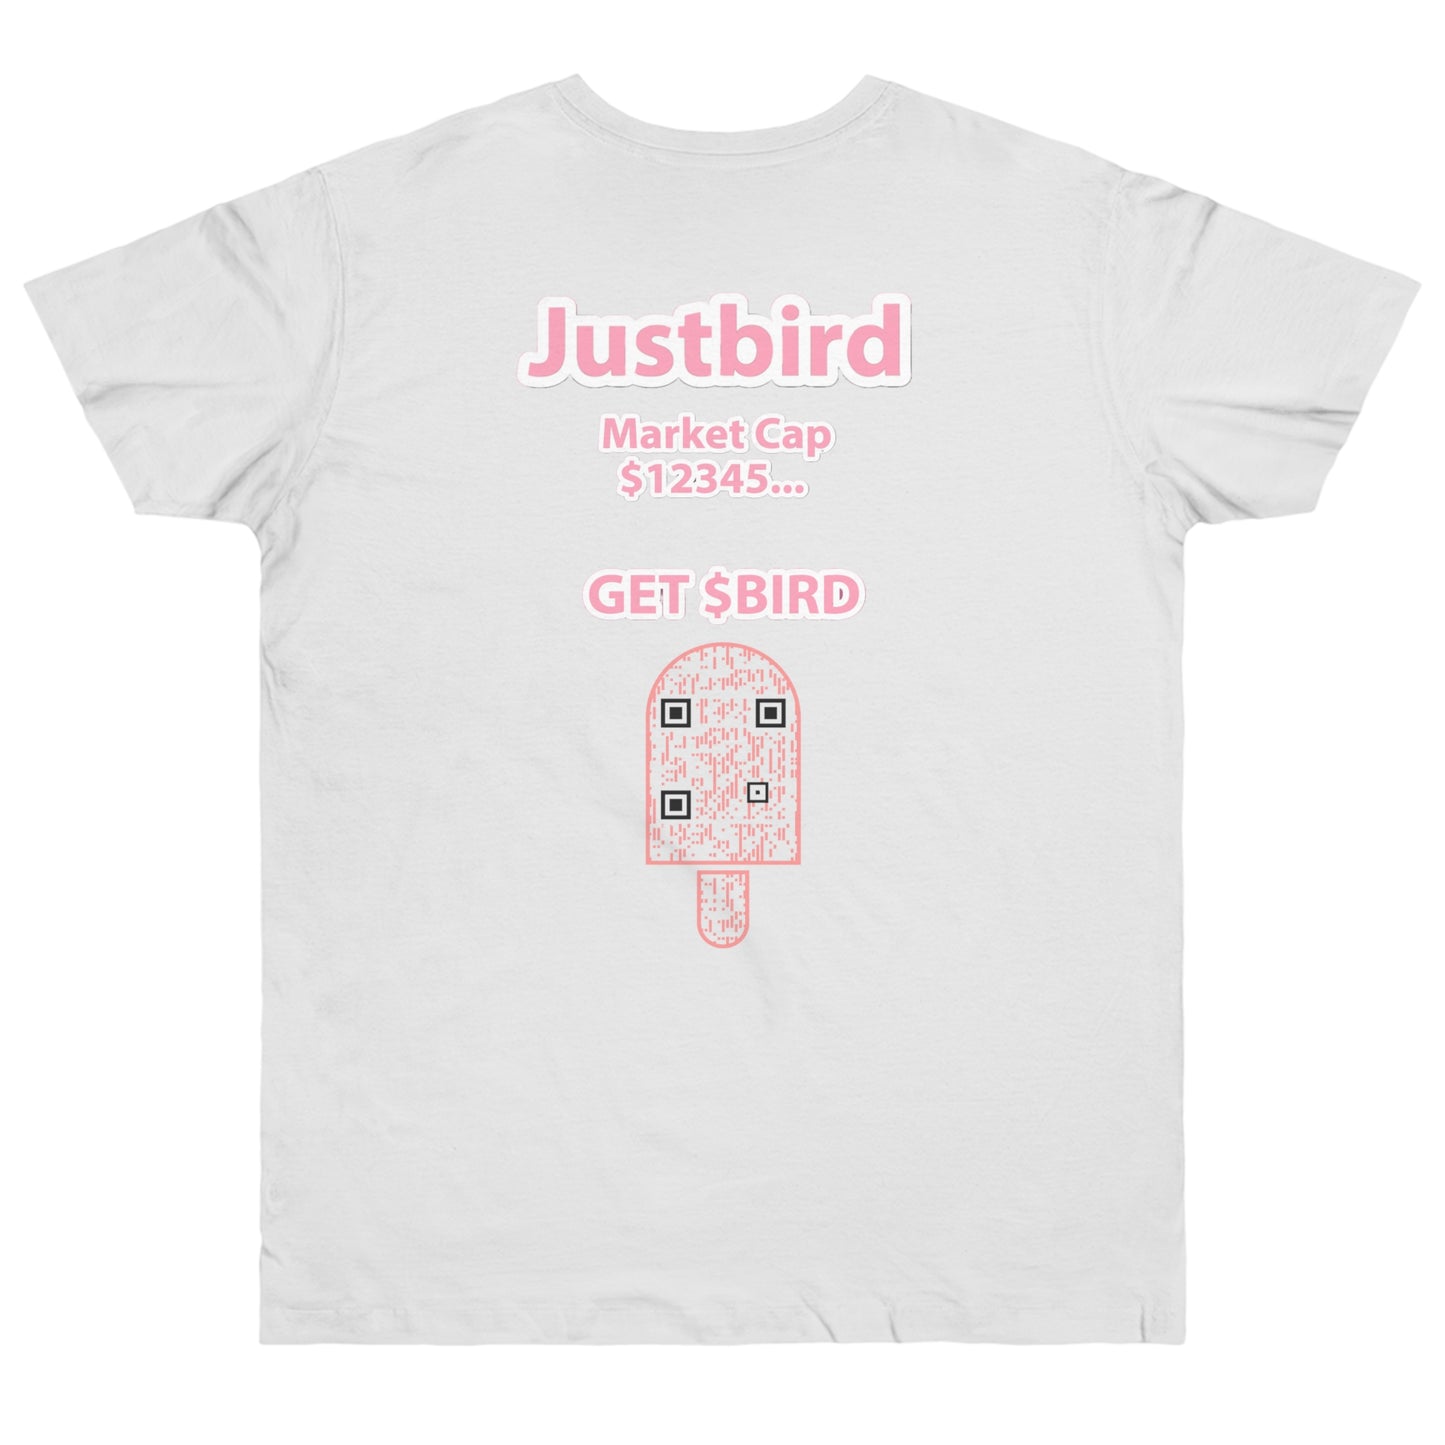 Just a White Bird T-shirt!